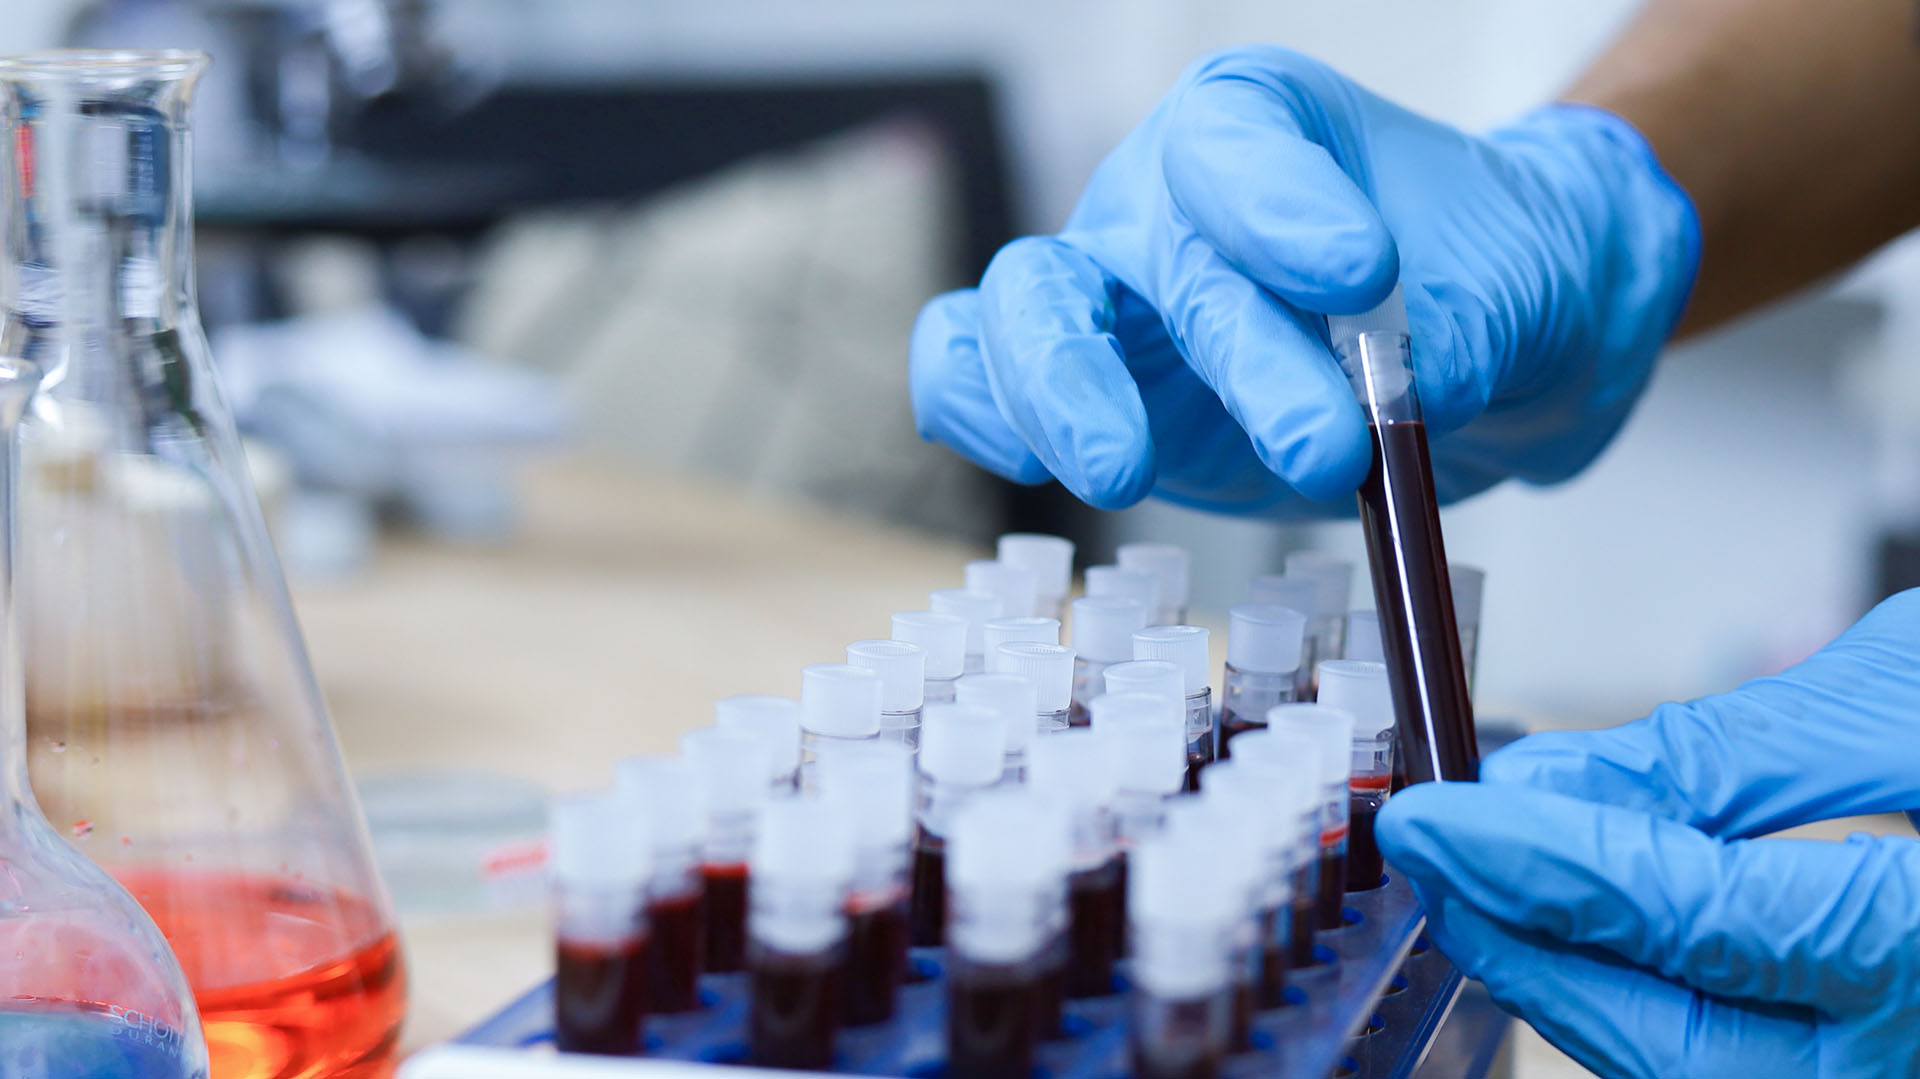 La prediabetes se puede determinar a partir de análisis de sangre indicados tras la consulta médica (Getty Images)